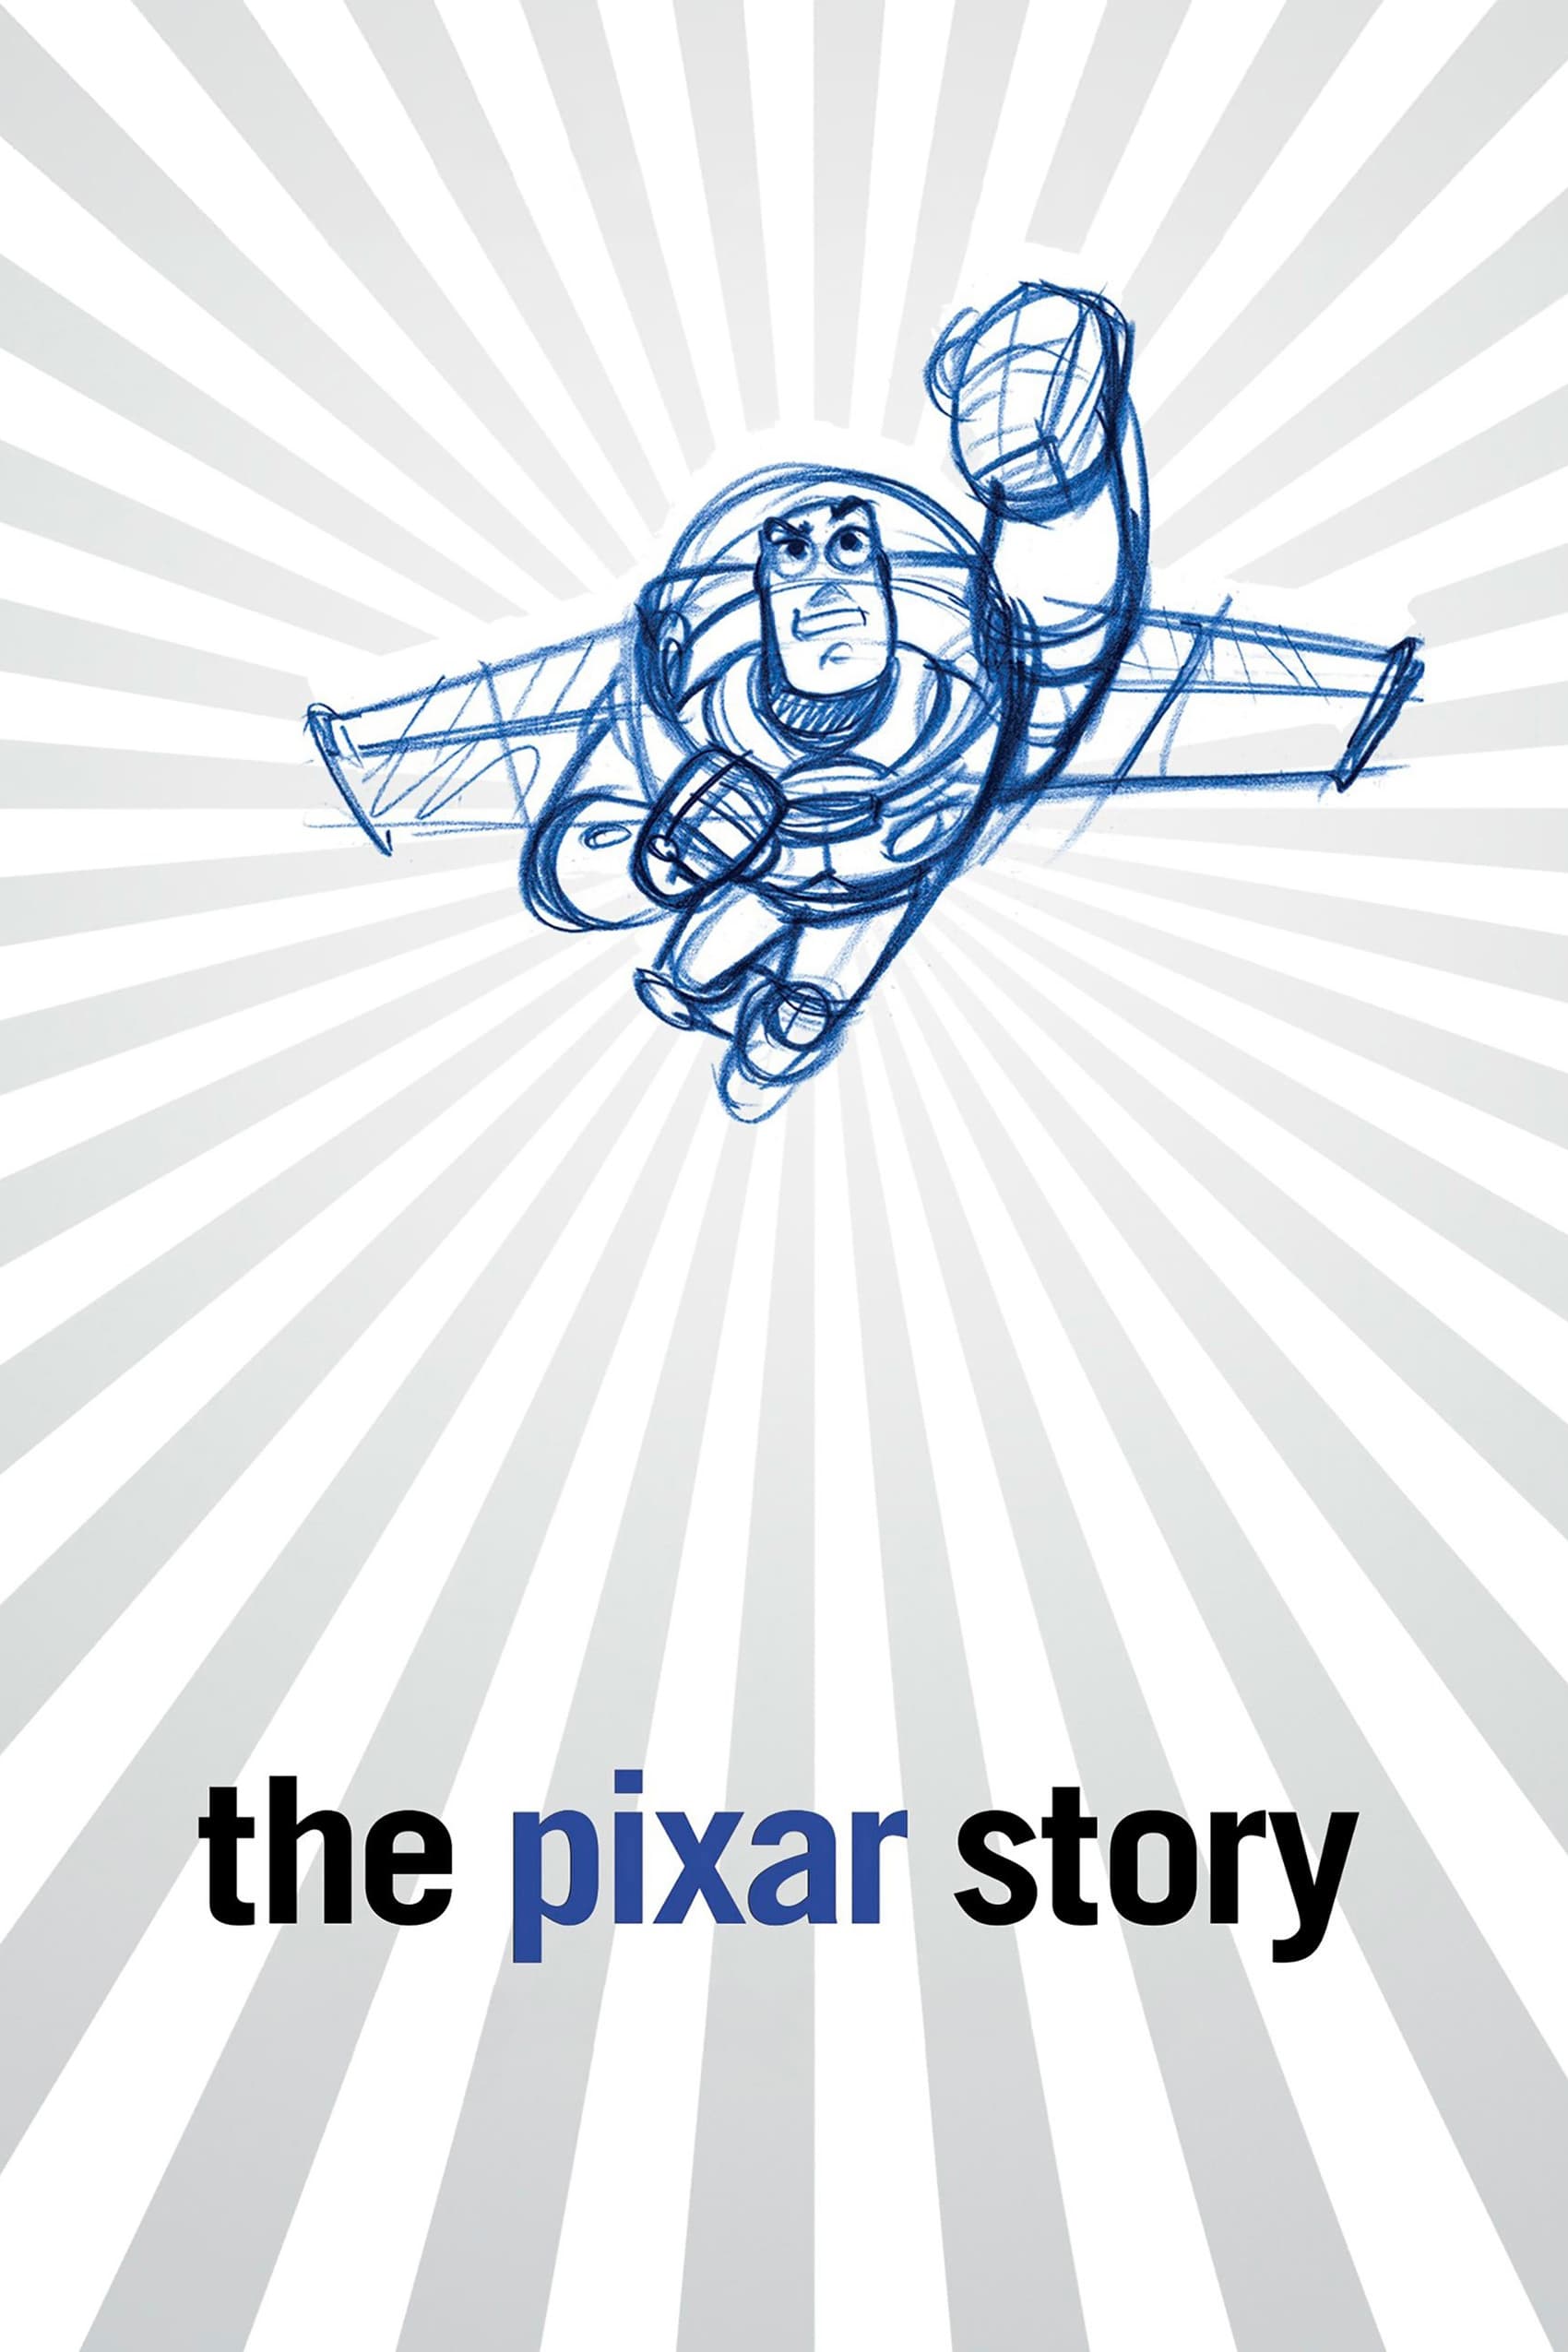 L'histoire de Pixar